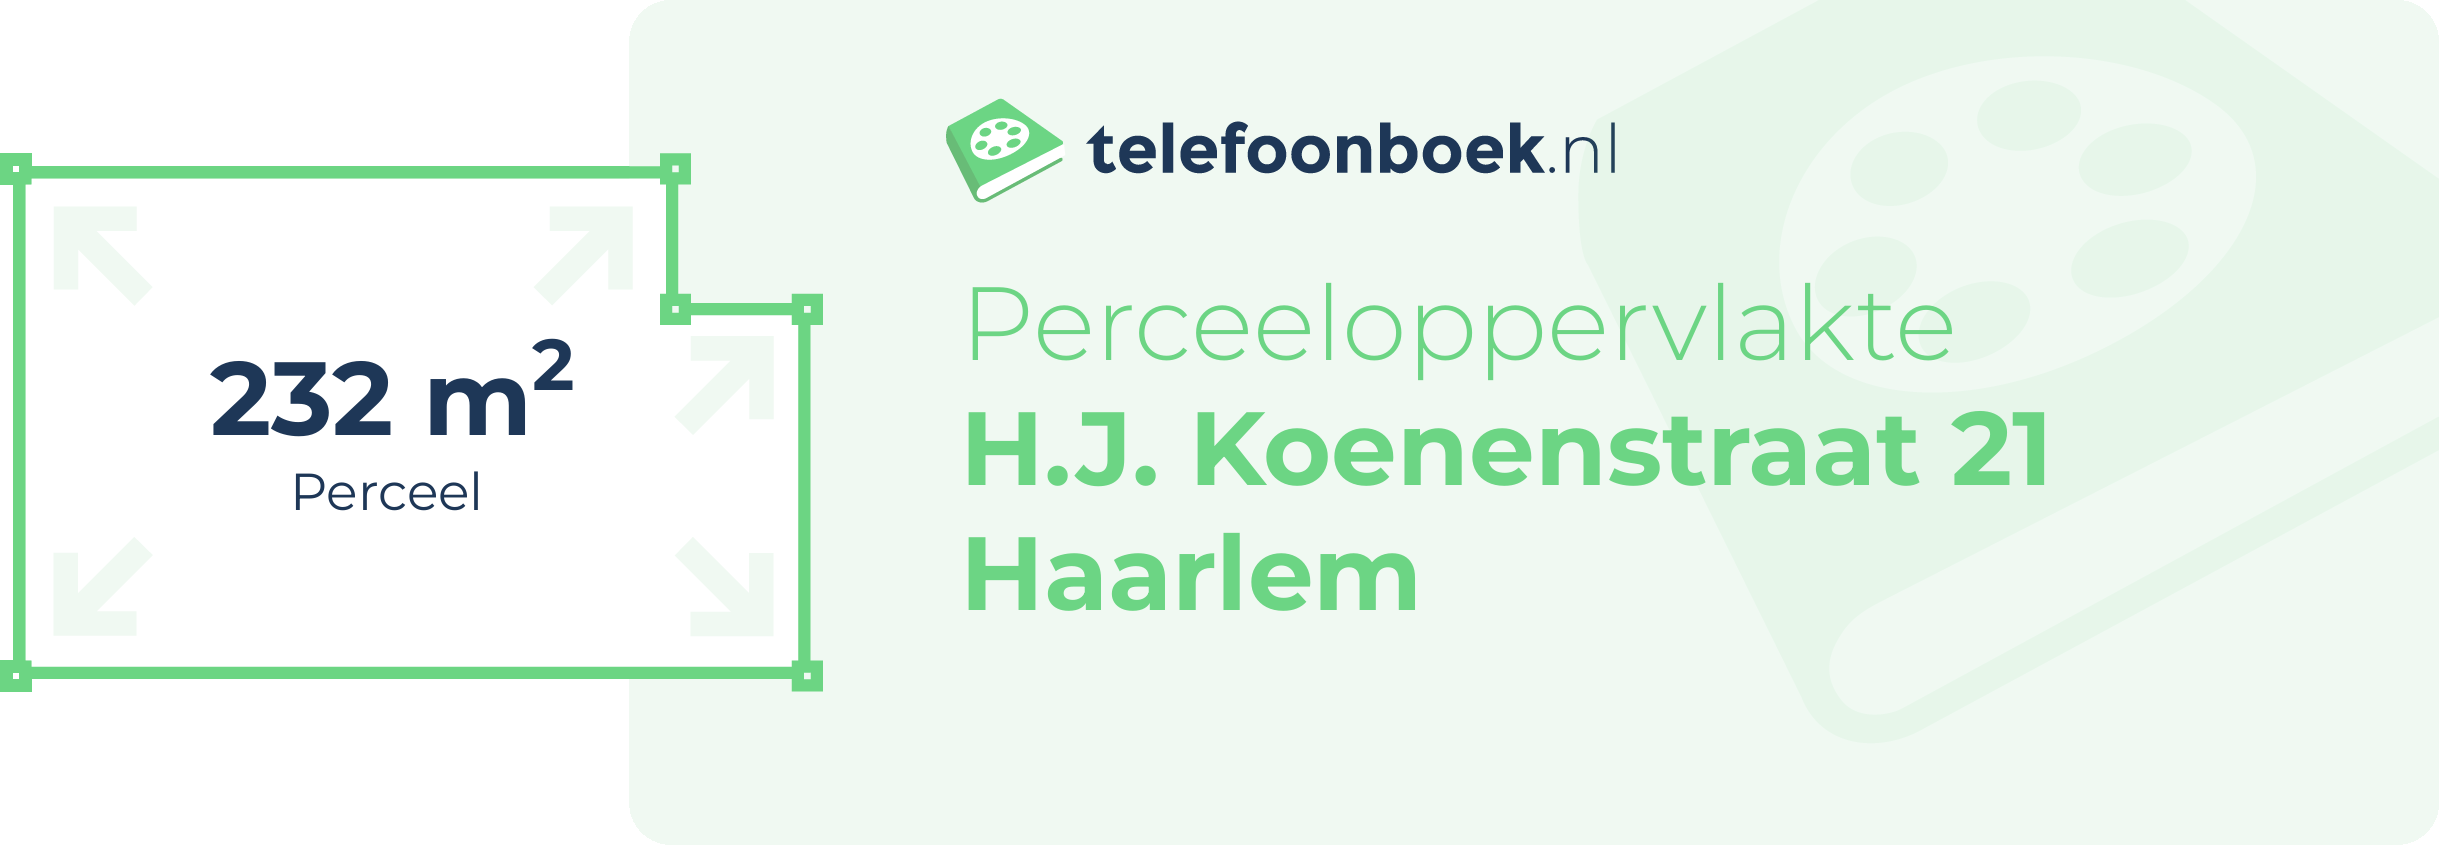 Perceeloppervlakte H.J. Koenenstraat 21 Haarlem